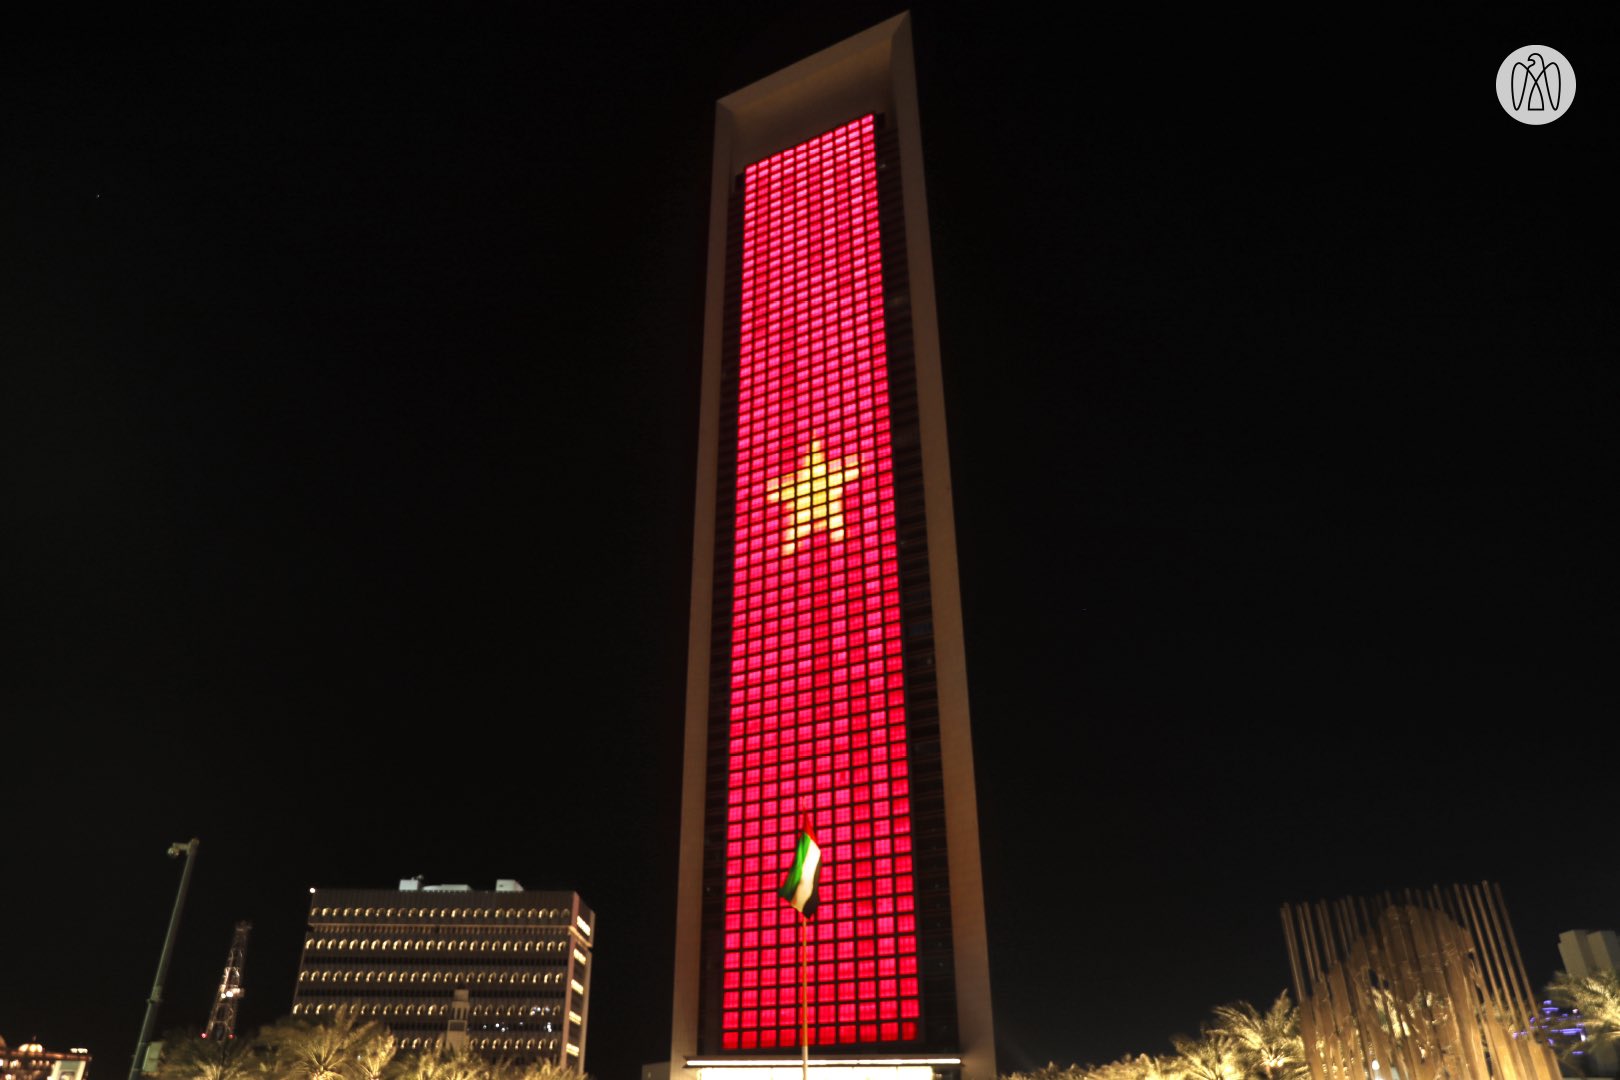 Quốc kỳ Việt Nam trên tòa tháp cao nhất thế giới đẹp đến mức nào? Hãy ngắm nhìn hình ảnh này và cảm nhận sức mạnh tinh thần của đất nước ta.